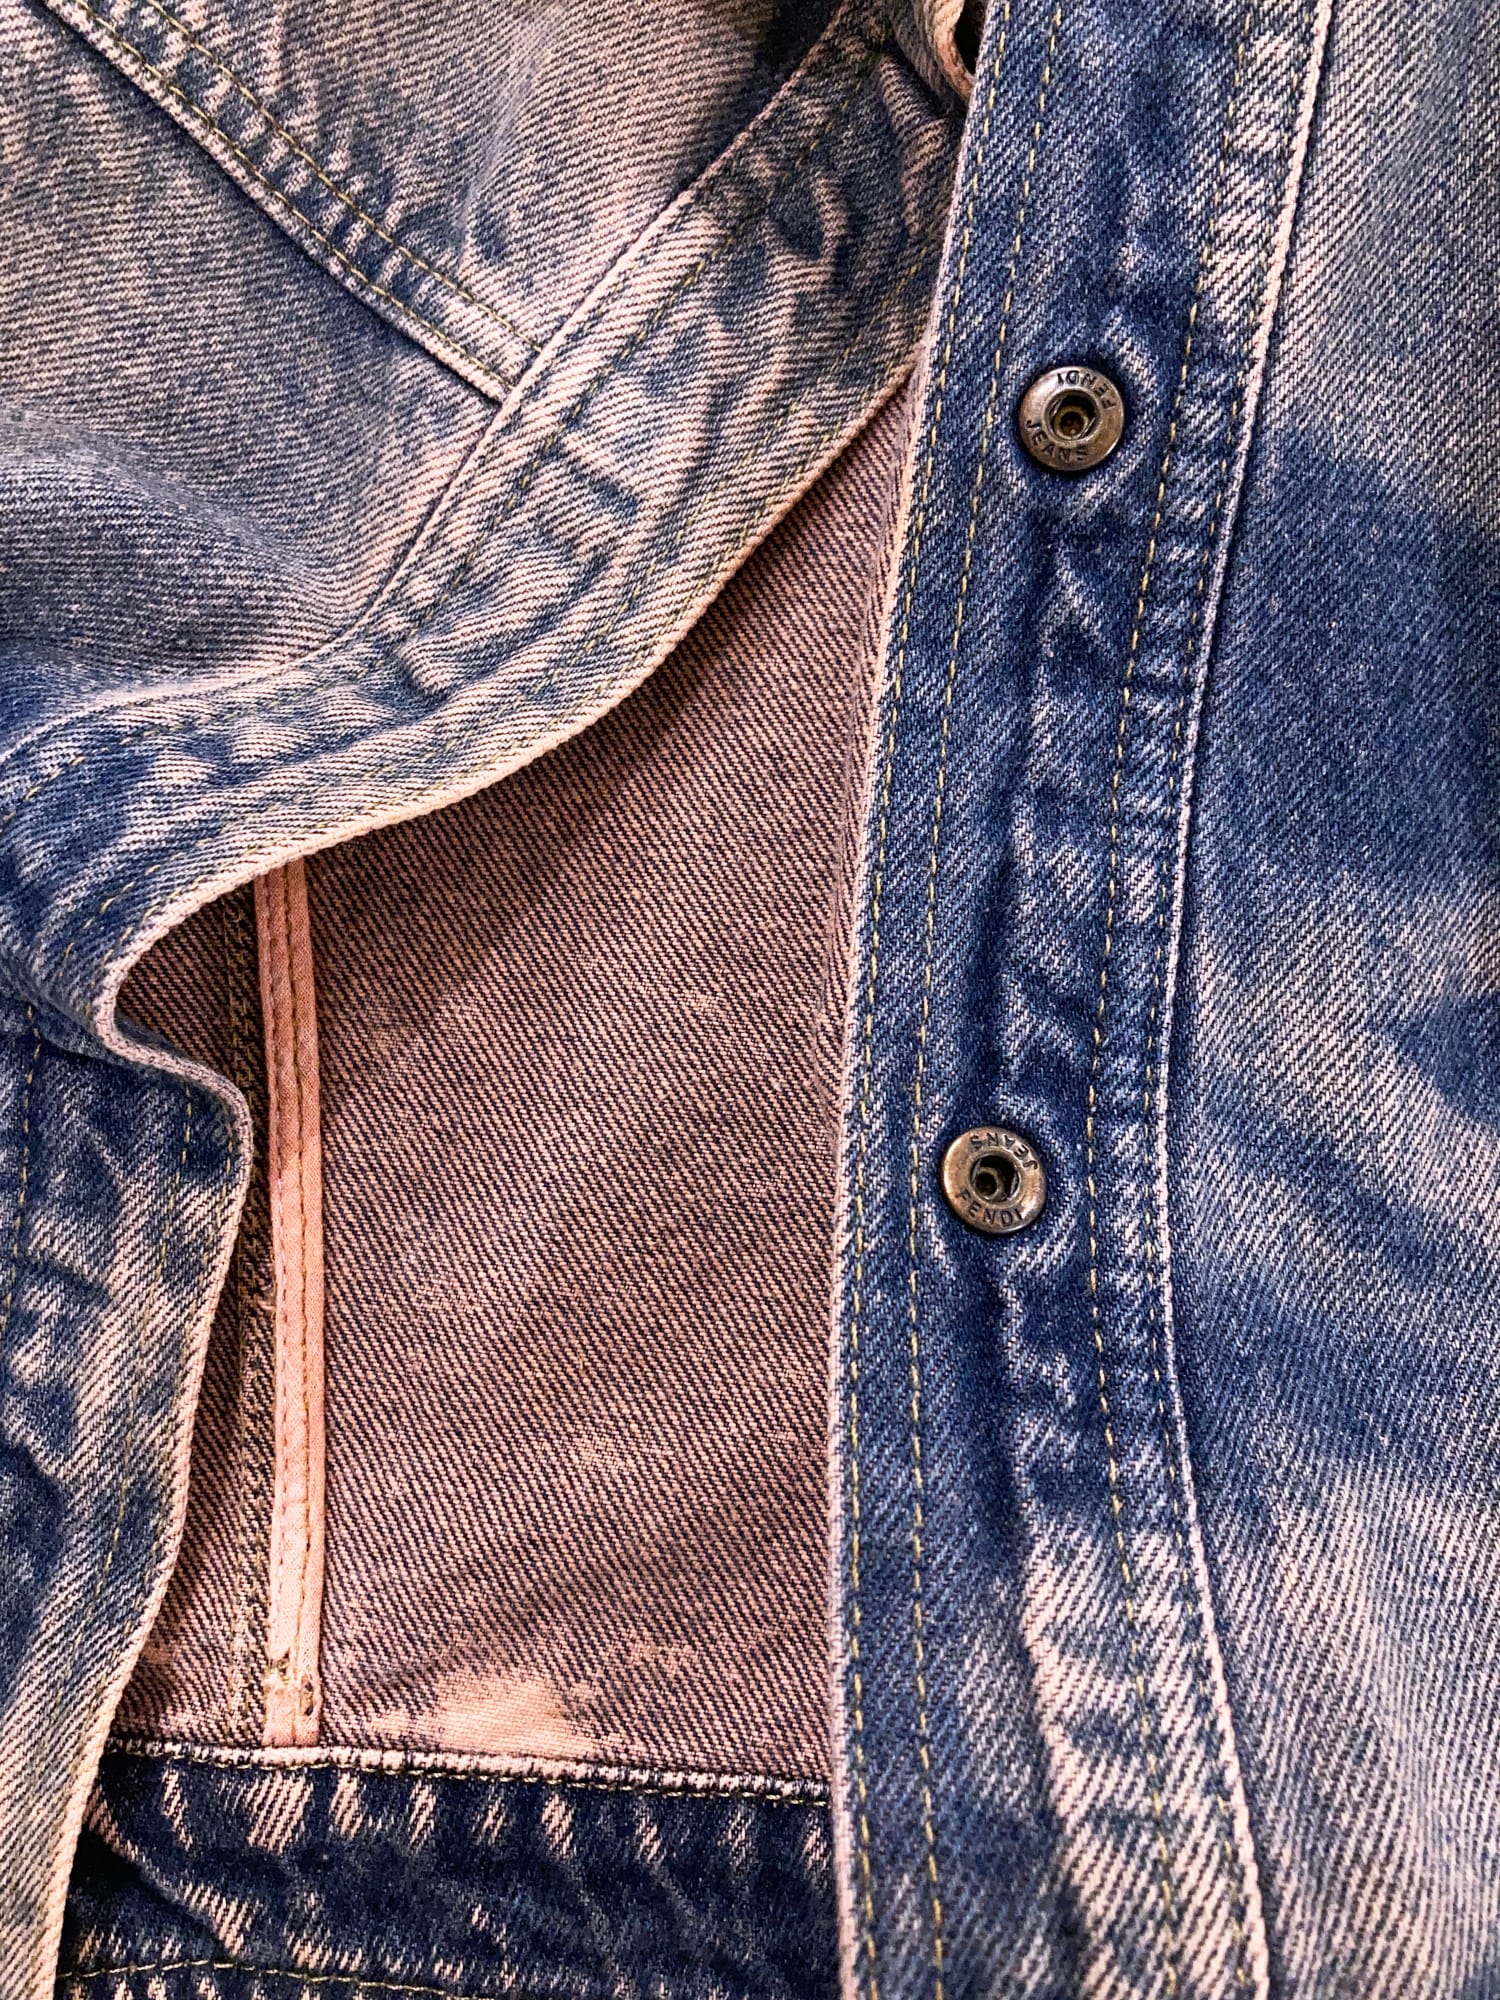 Fendi Jeans 1990s pink and blue cotton shibori tie dye denim jacket